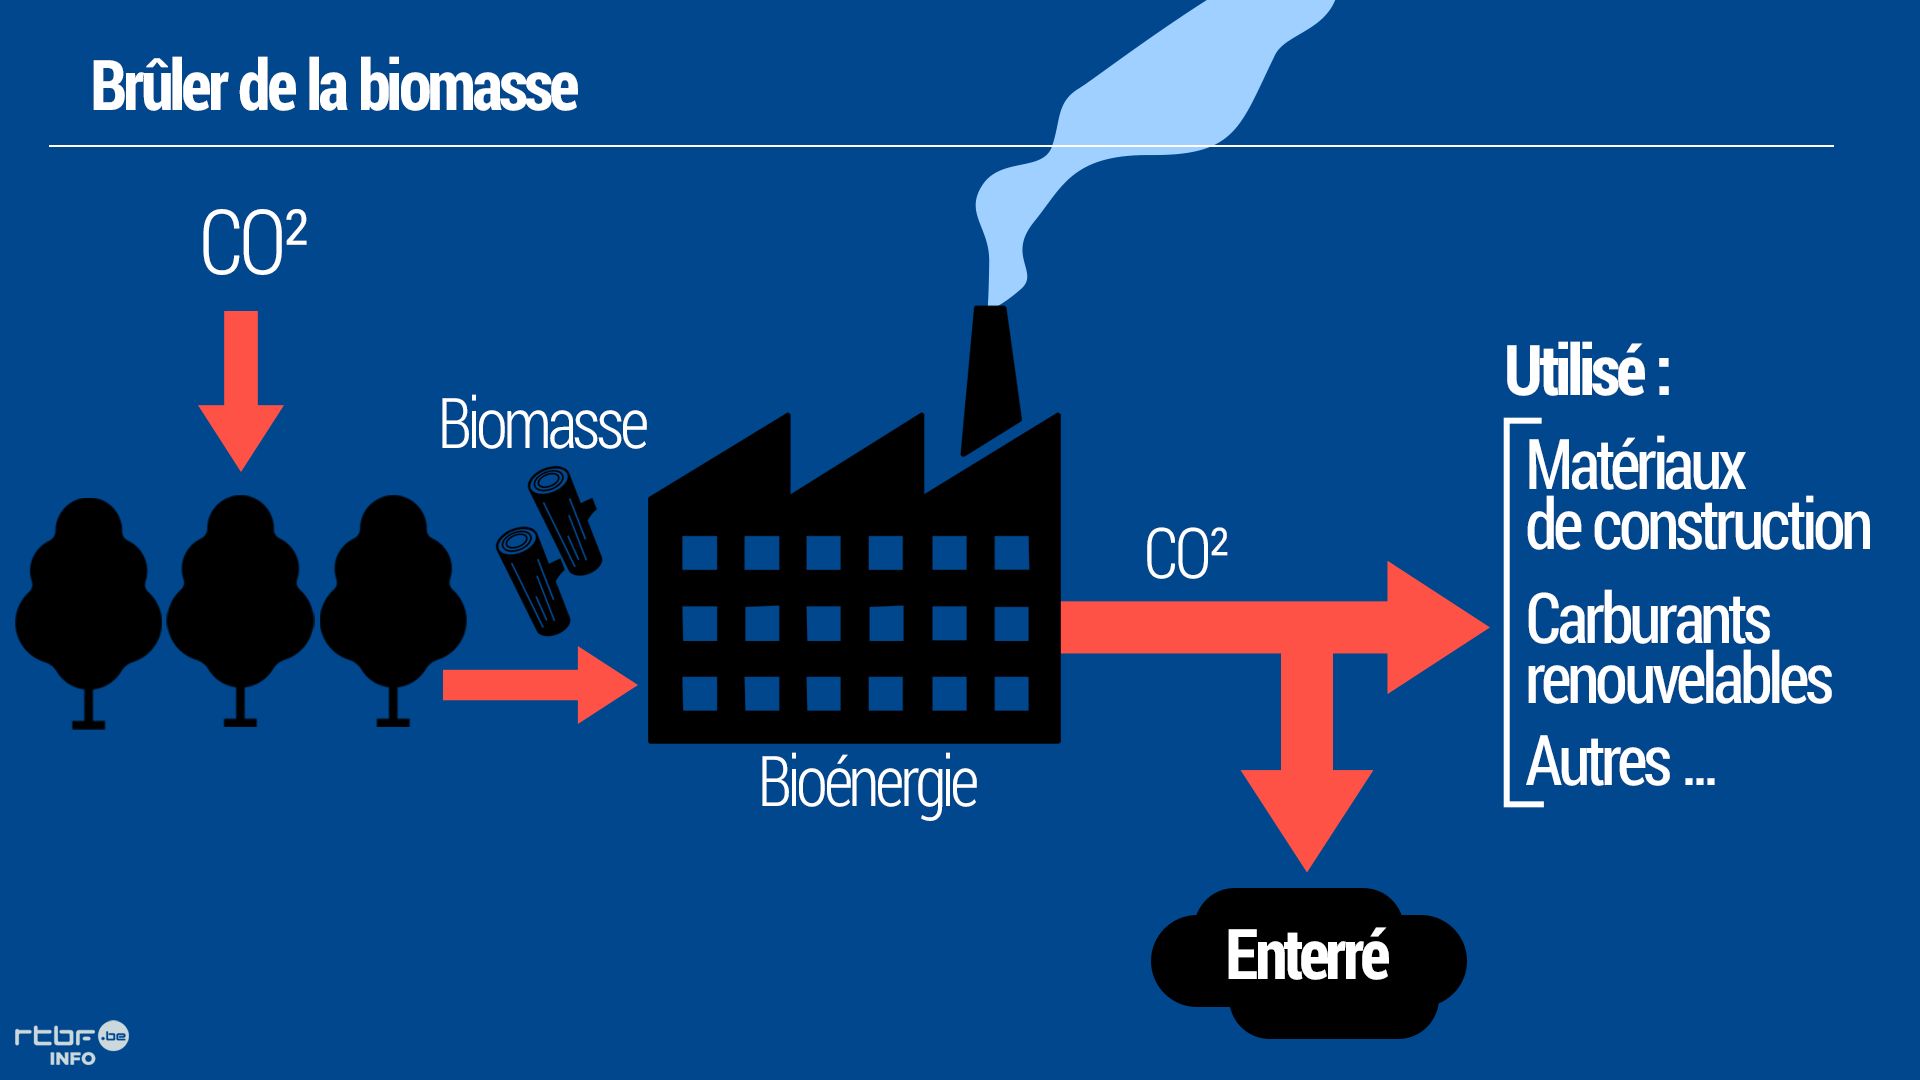 Brûler de la biomasse permet de retirer du CO2 de l’atmosphère